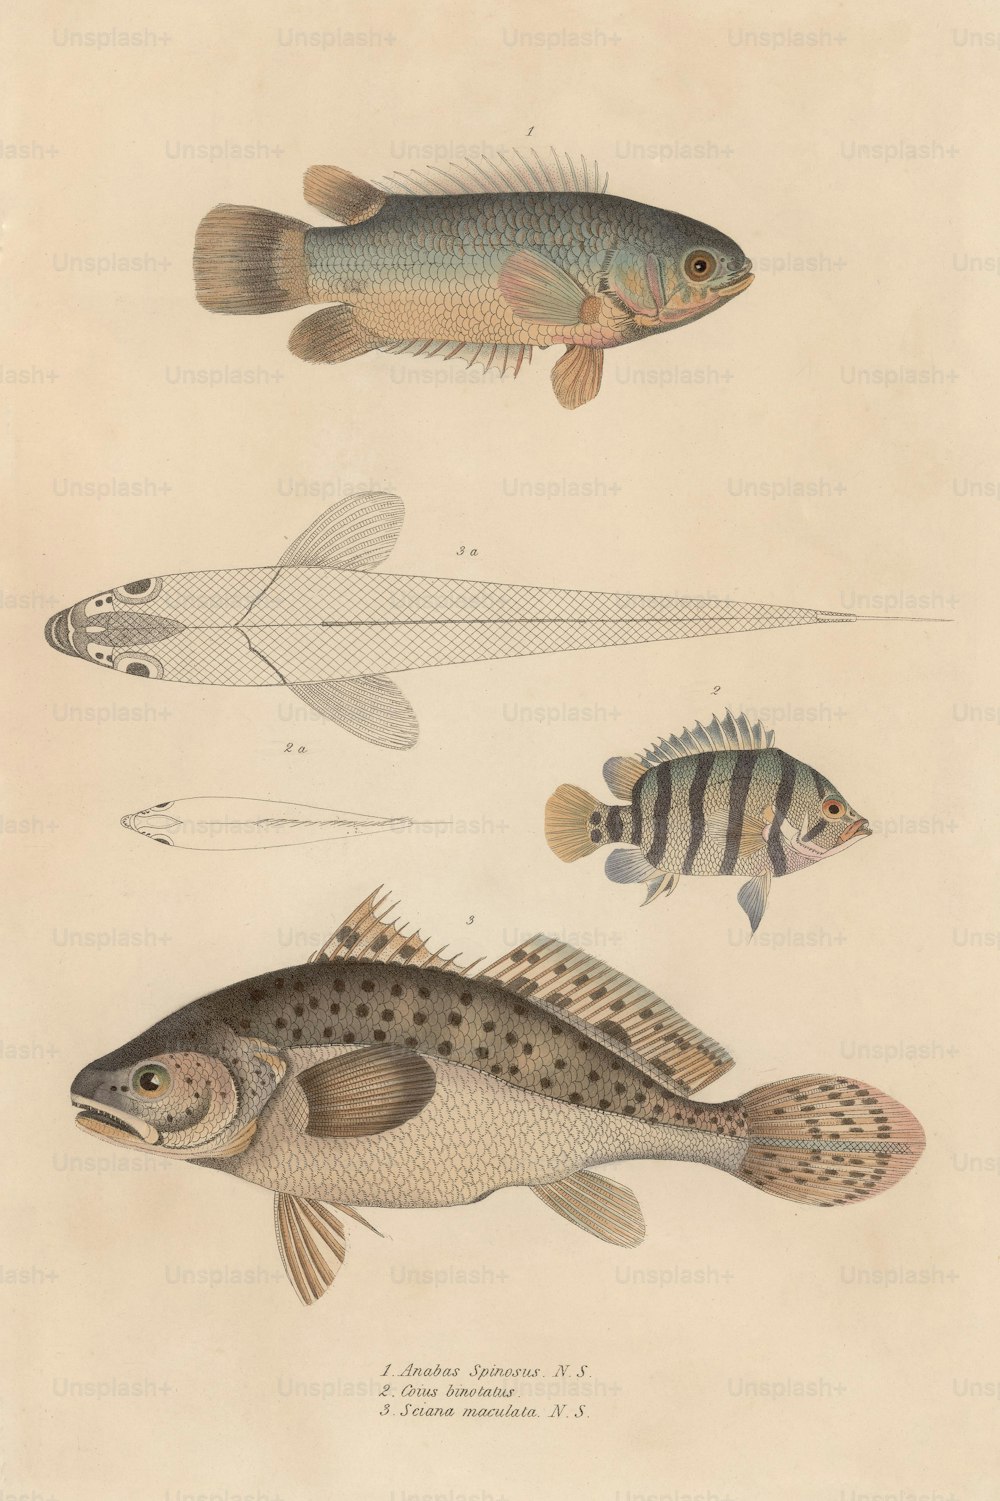 Vários peixes, incluindo anabas spinosus, coius binotatus e sciana maculata, por volta de 1850. (Foto: Hulton Archive/Getty Images)